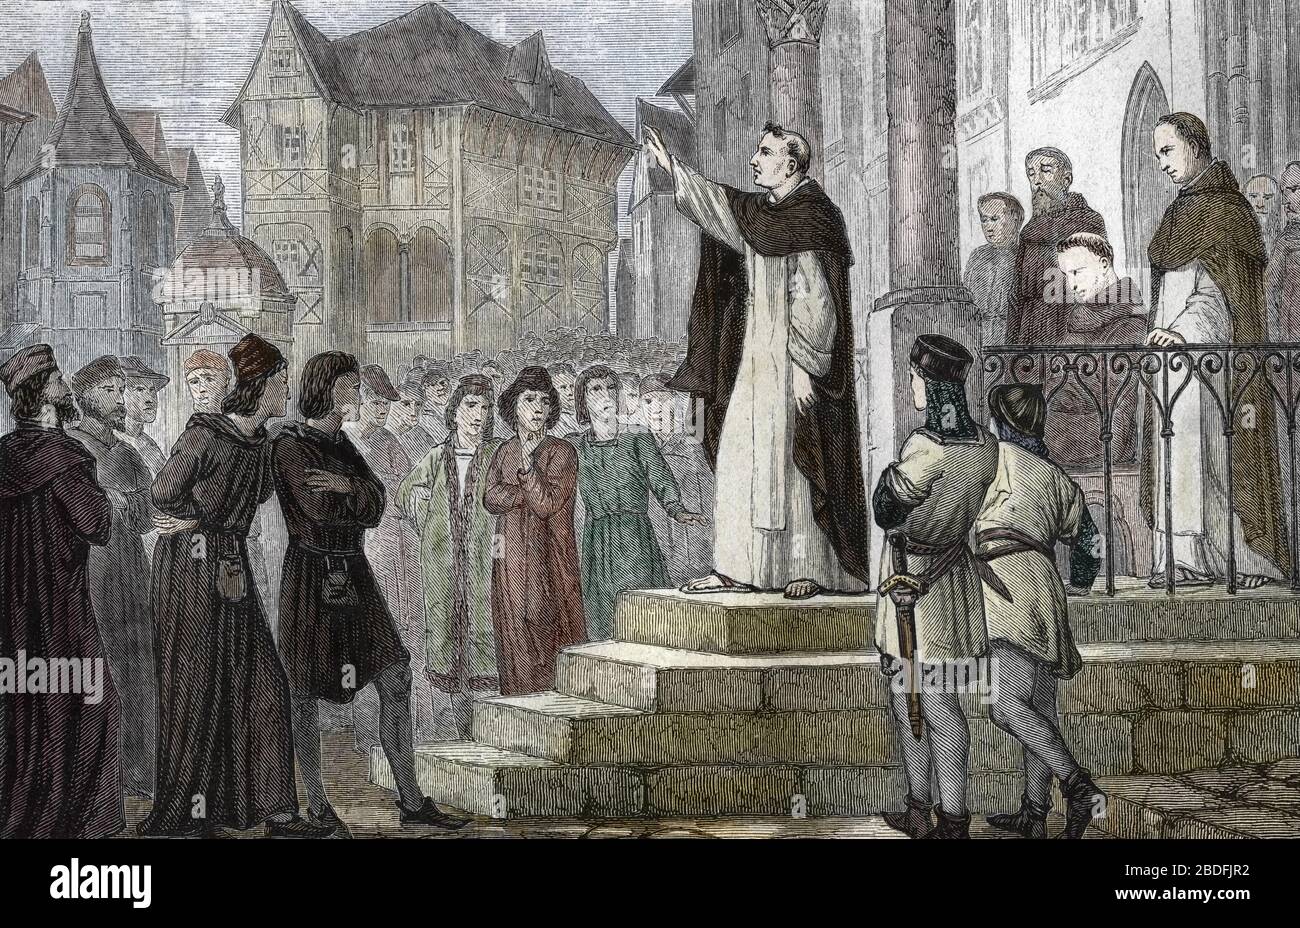 "Representation d' Albert le Grand (1193/1206-1280) enseignant a Paris, a l'Universite de Paris, au Premier couvent dominicain de la rue Saint Jacques Foto Stock